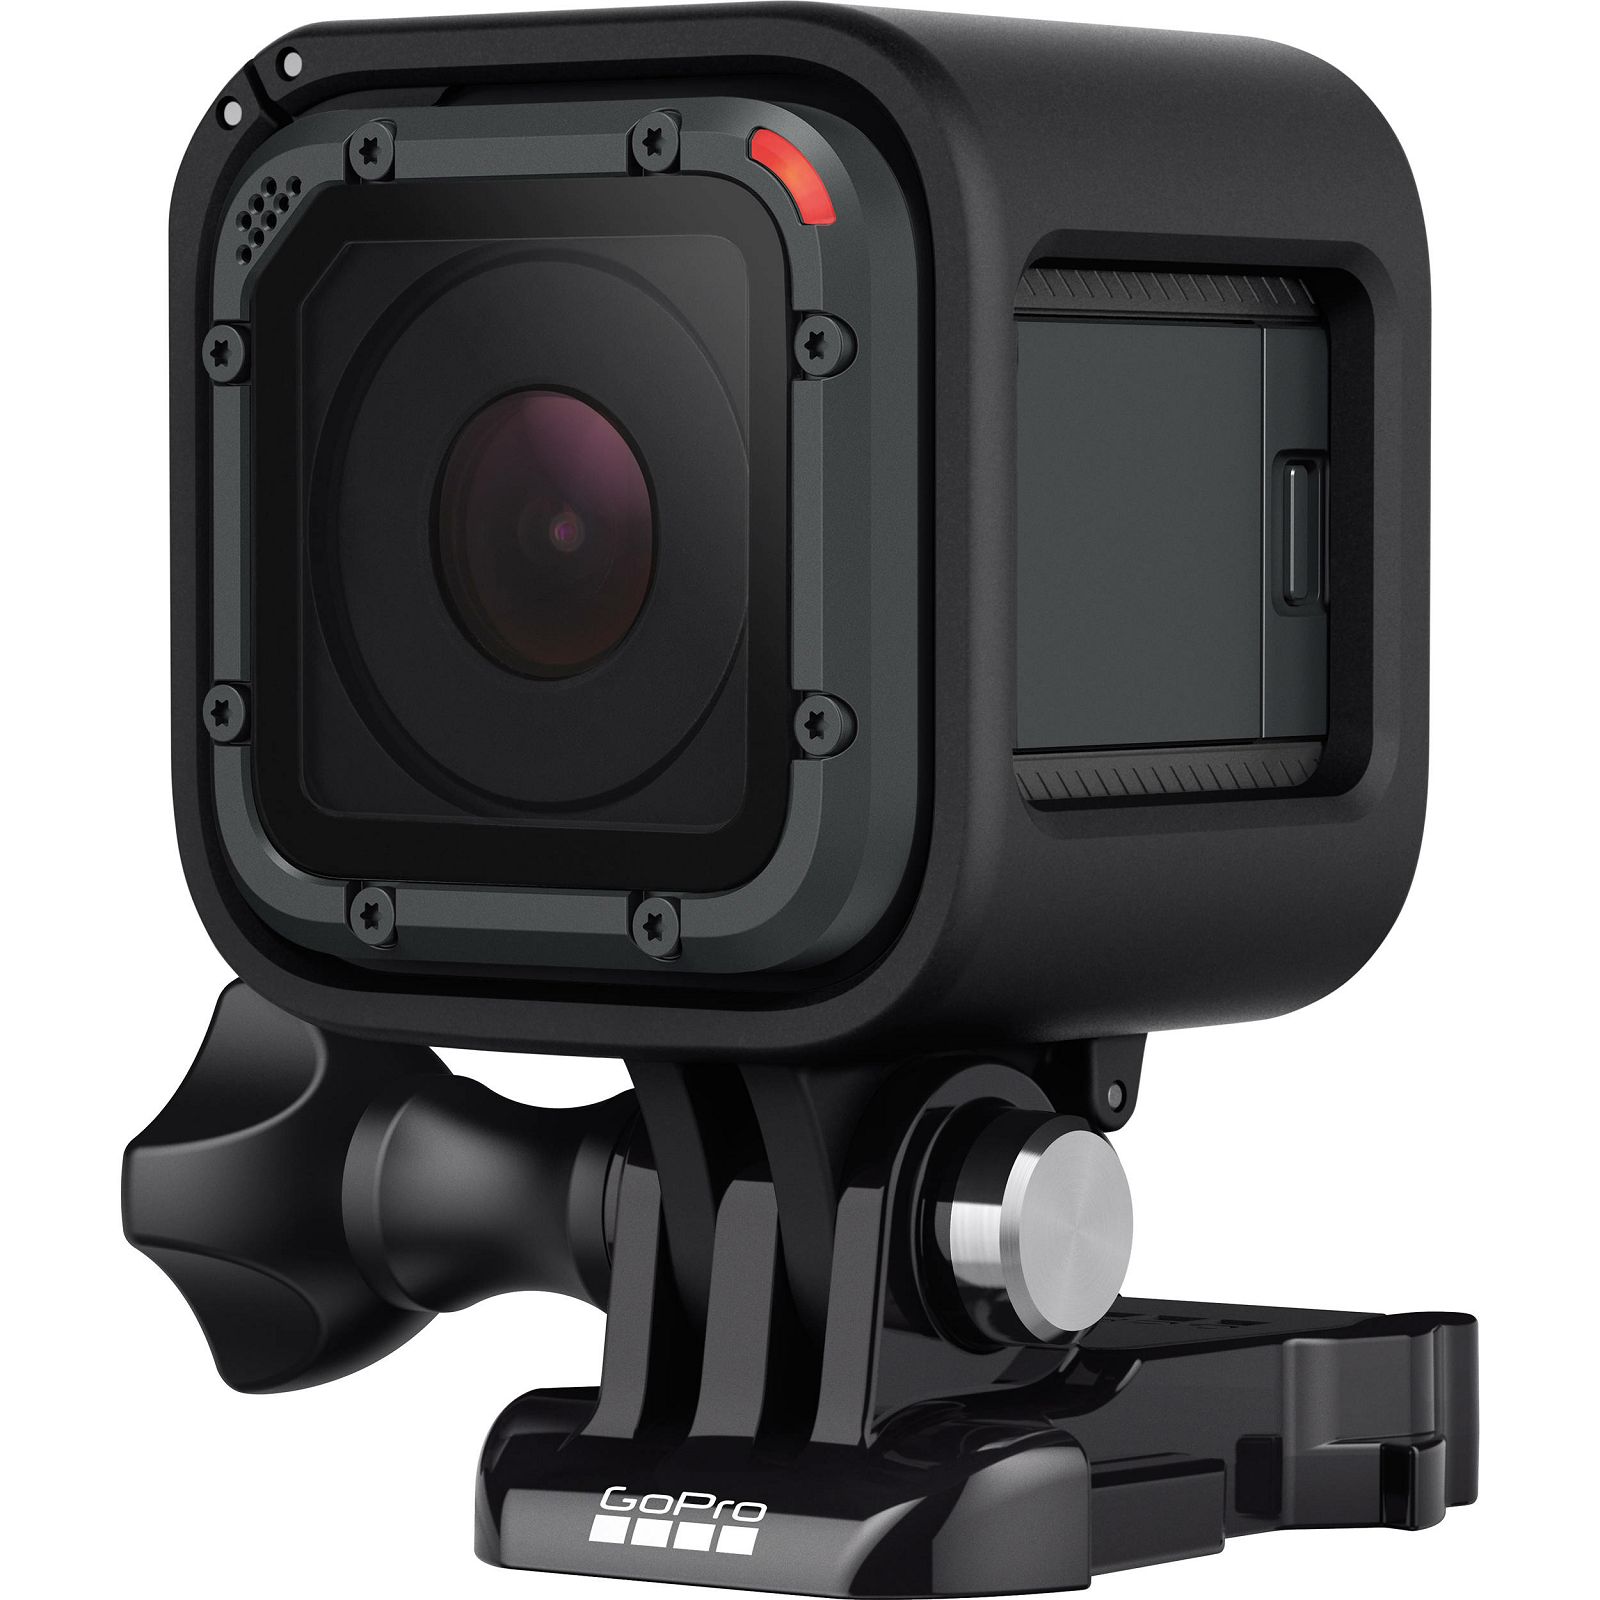 GoPro HERO5 Session sportska akcijska kamera (CHDHS-501-EU)